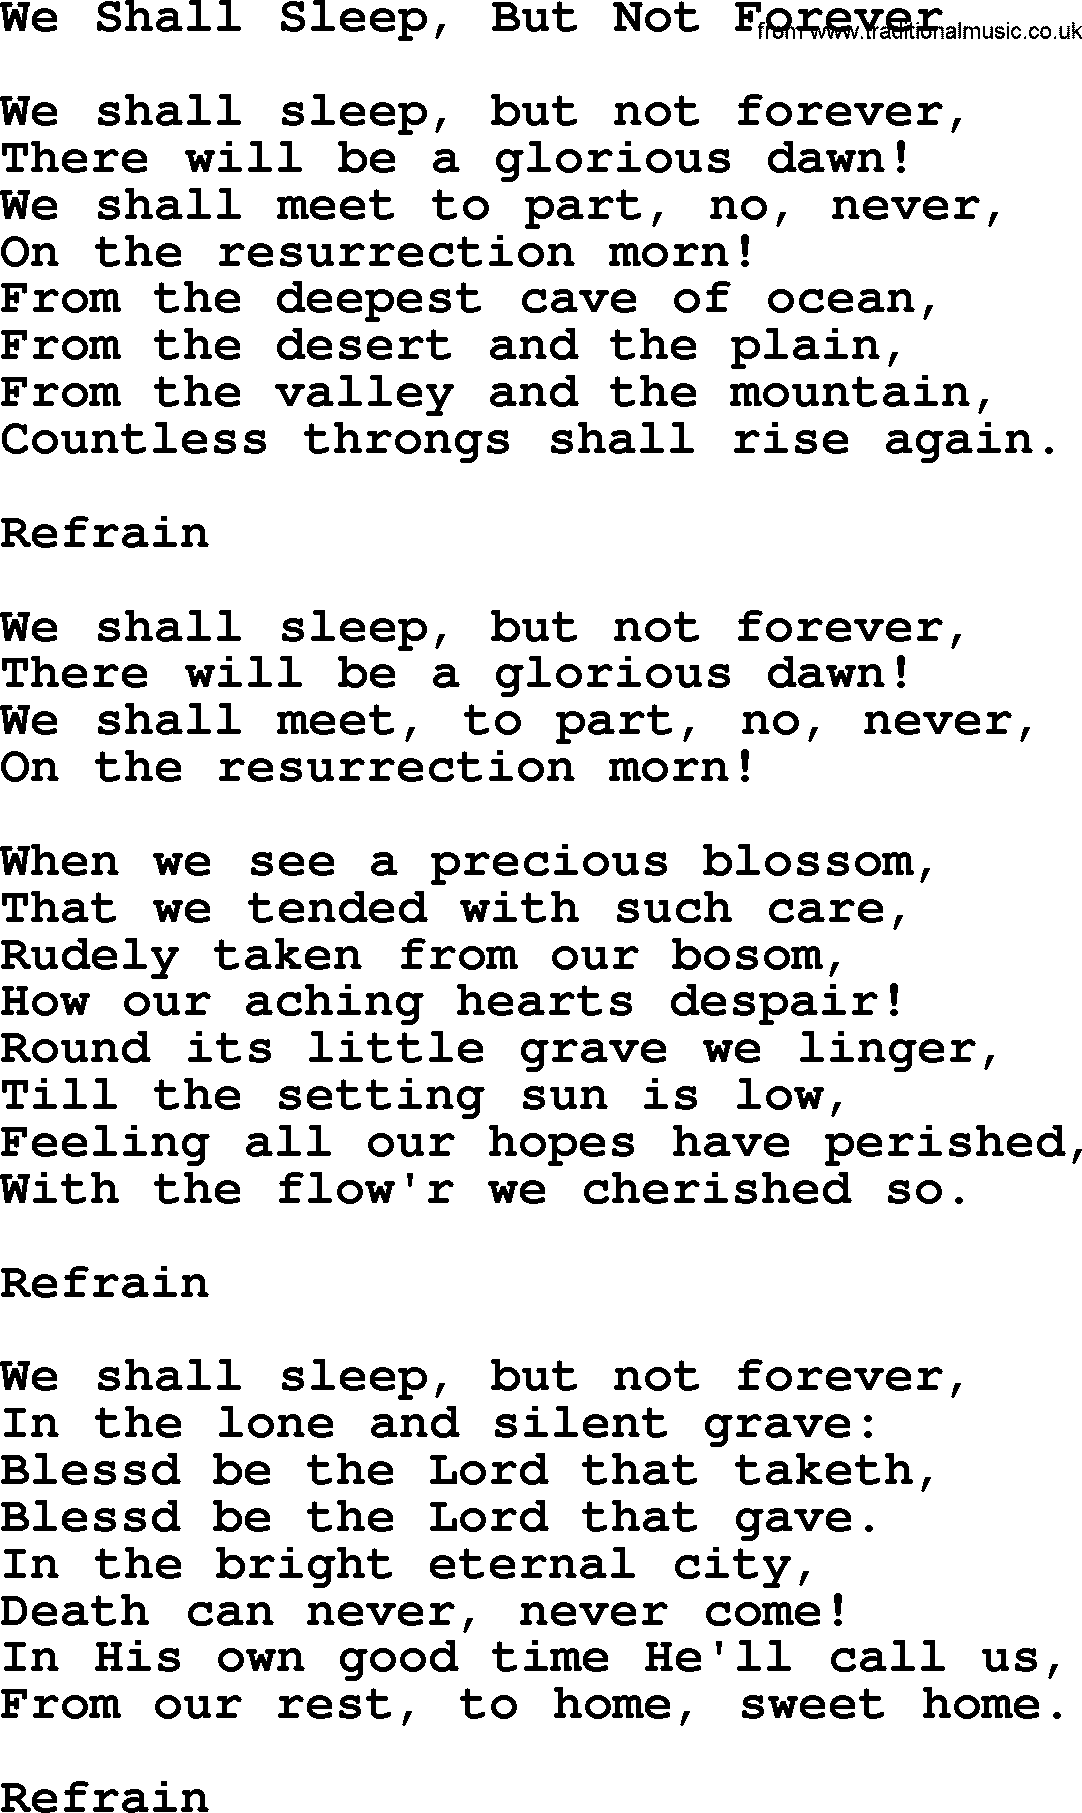 Catholic Hymn: We Shall Sleep, But Not Forever lyrics with PDF